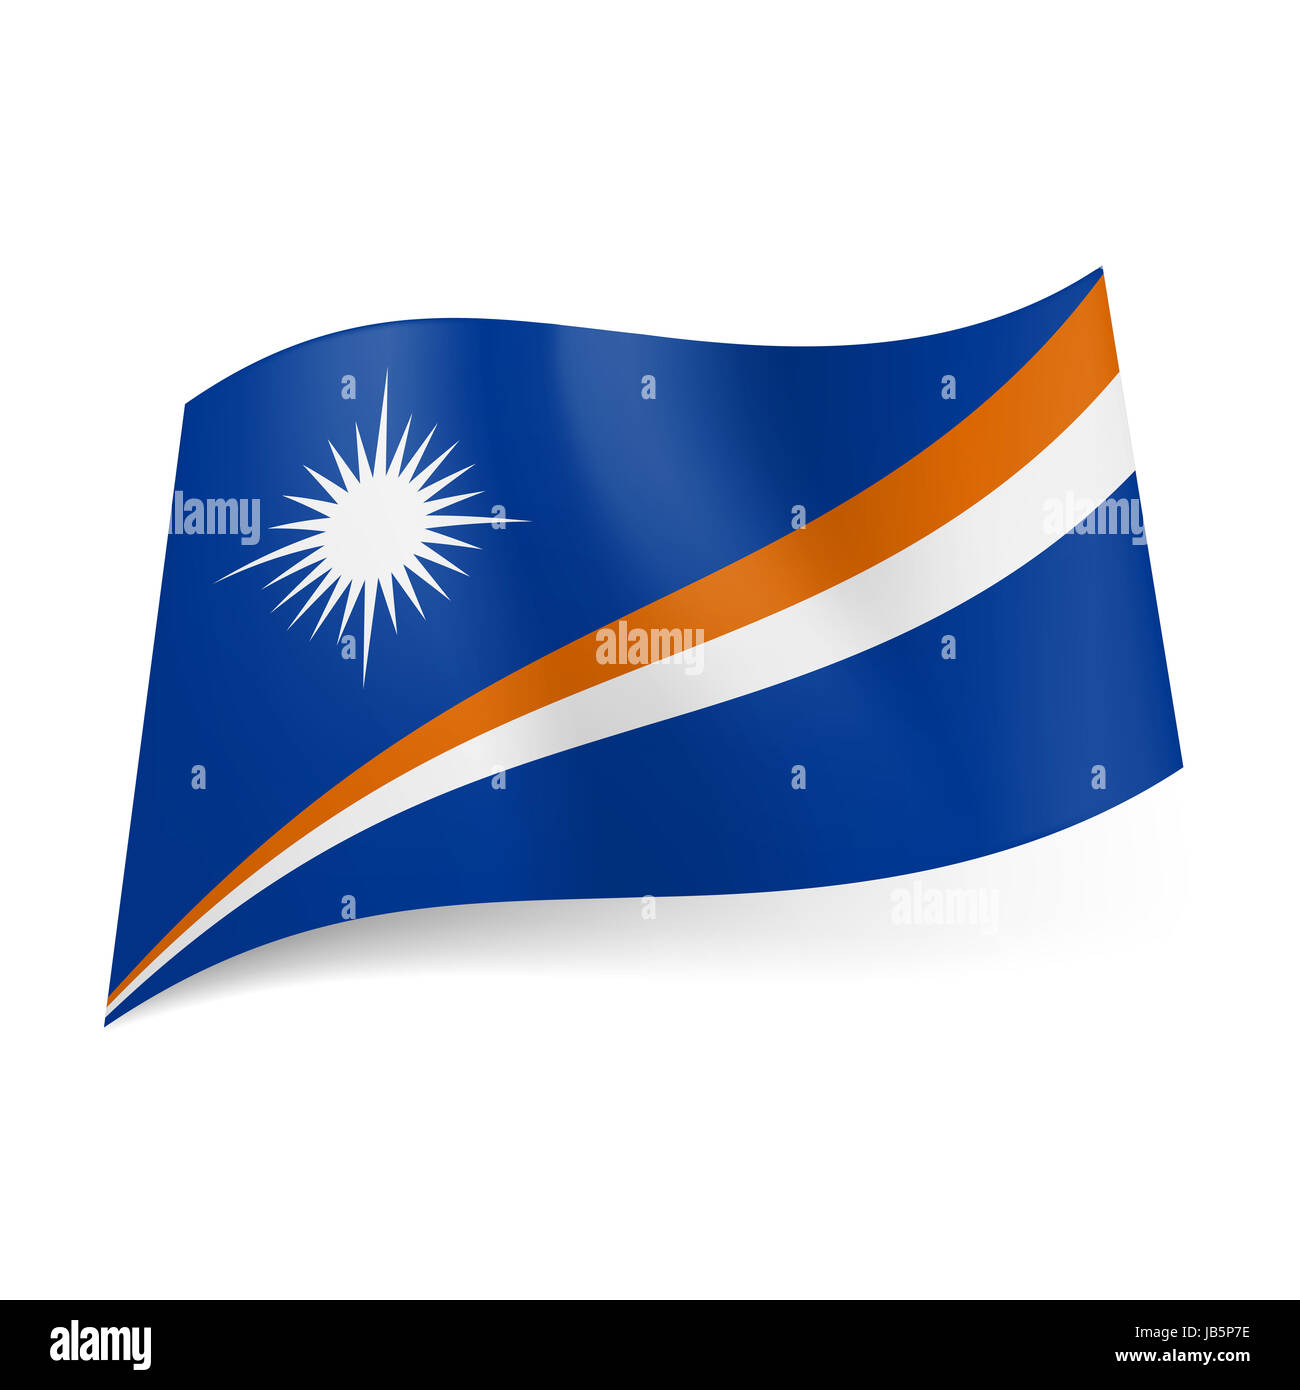 Die Nationalflagge Der Marshall Inseln Steigende Orangenen Und Blauen Diagonalen Streifen Mit Weissen Stern Uber Ihnen Auf Blauem Hintergrund Stockfotografie Alamy